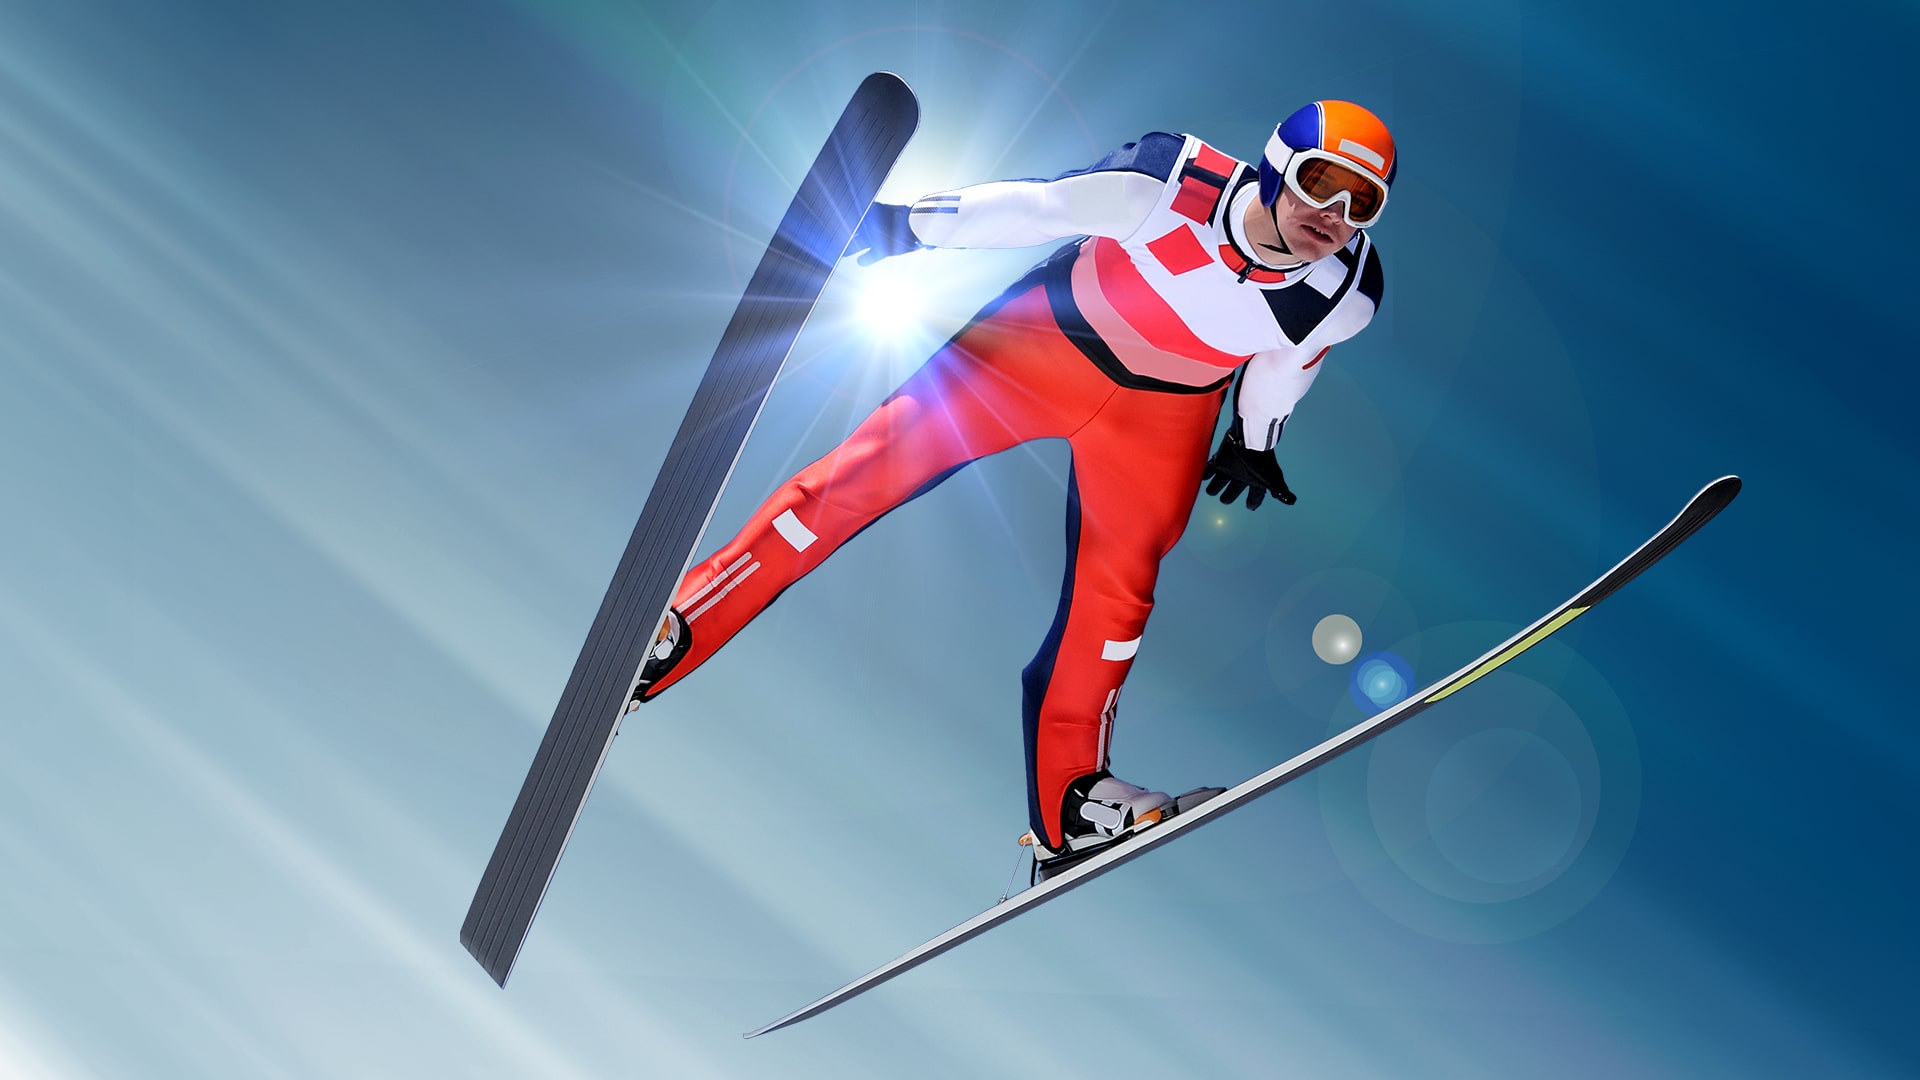 ski jumping vr ps4